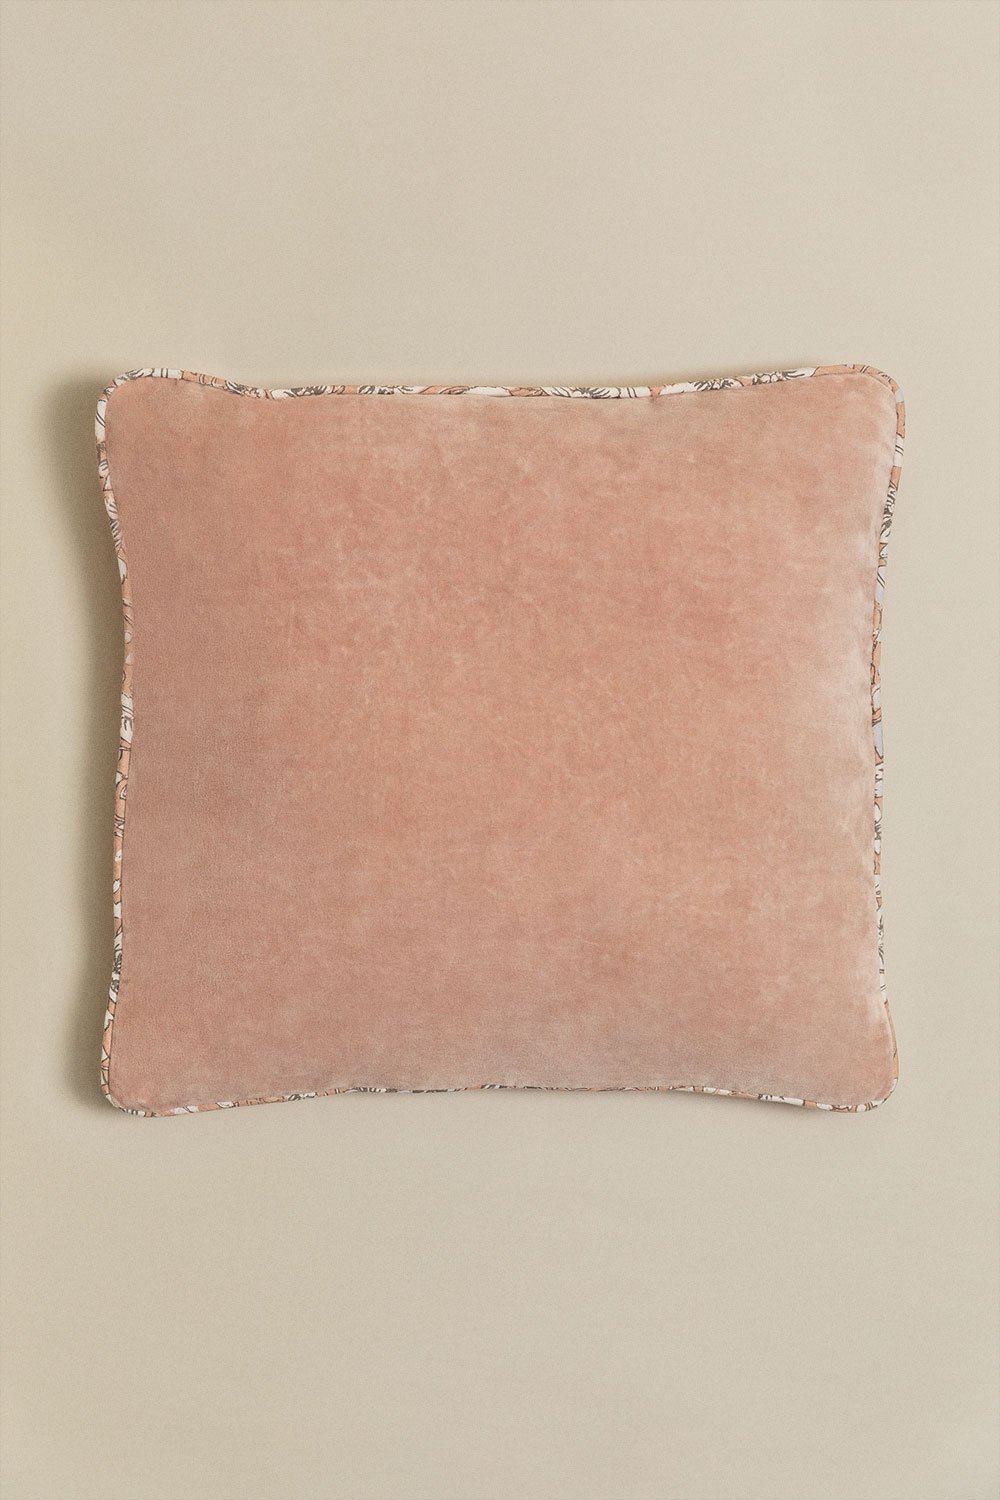 Cuscino quadrato in velluto (45x45 cm) Arjona , immagine della galleria 1